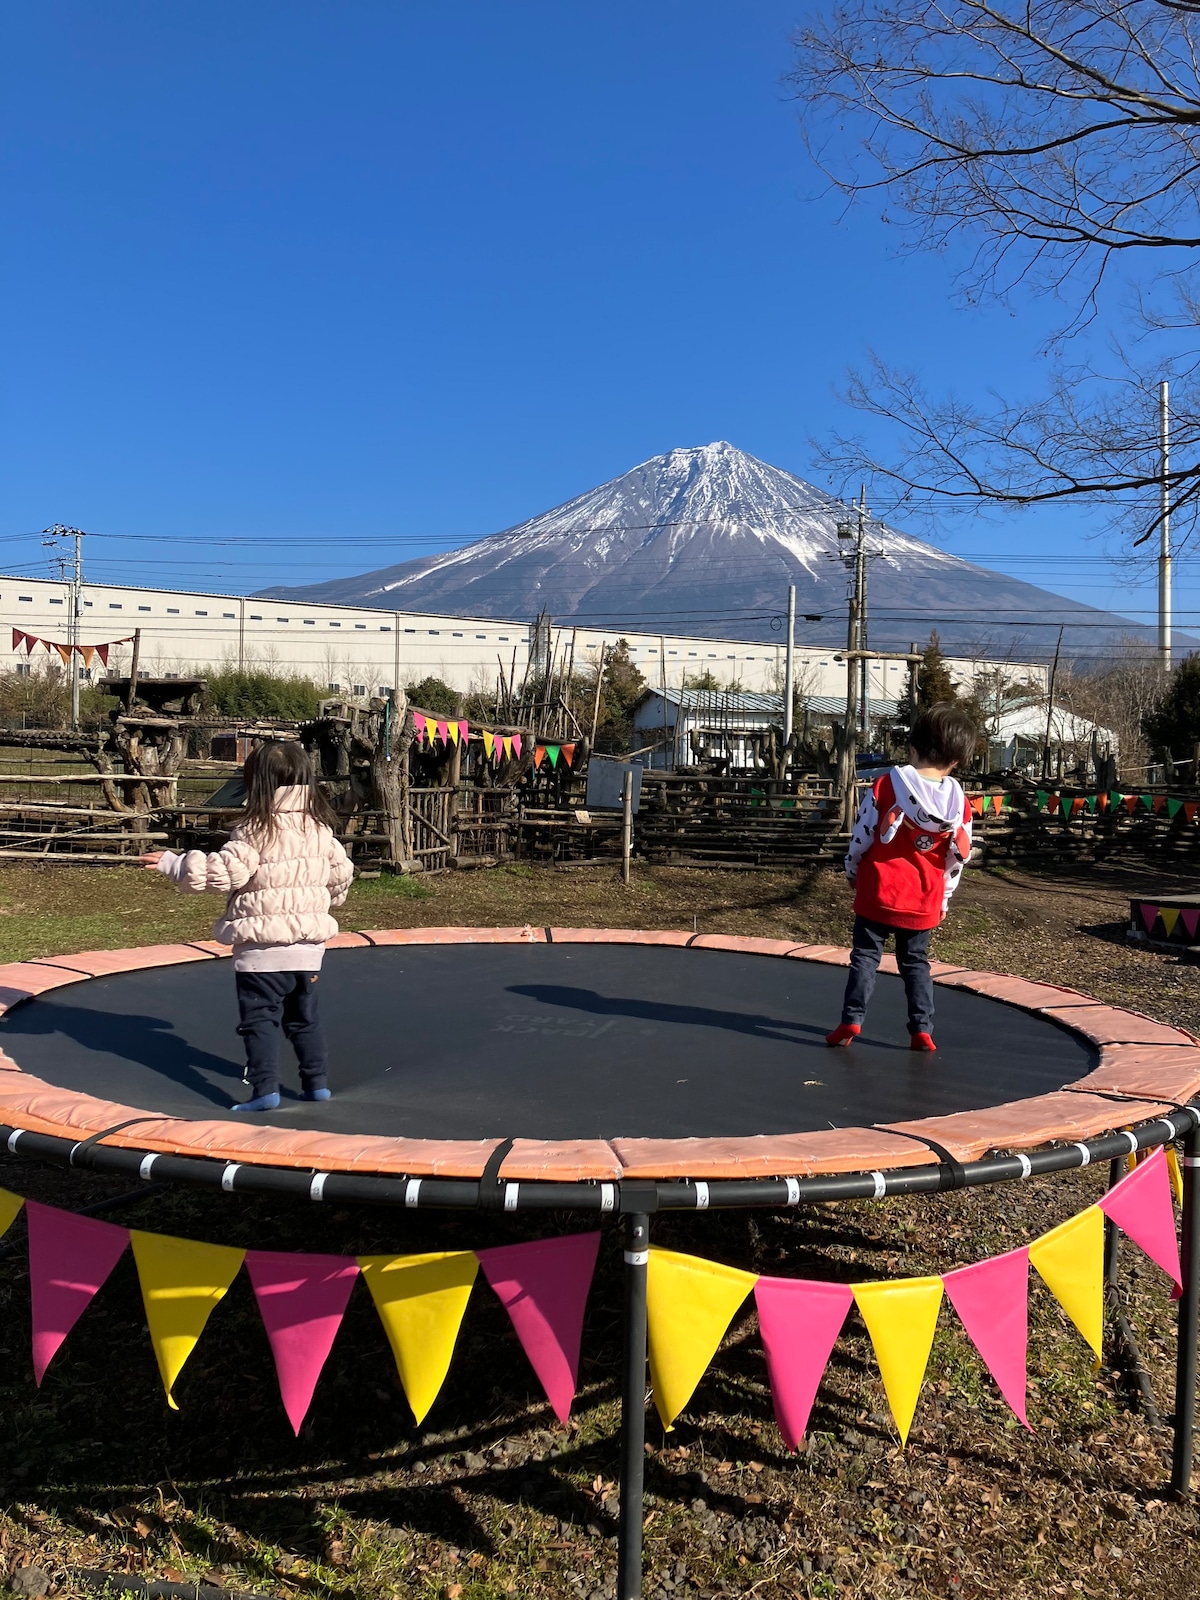 可免费使用俯瞰富士山烧烤场所烧烤场所（免费）。您可以享受动物的接触。・双人床/标准双人床